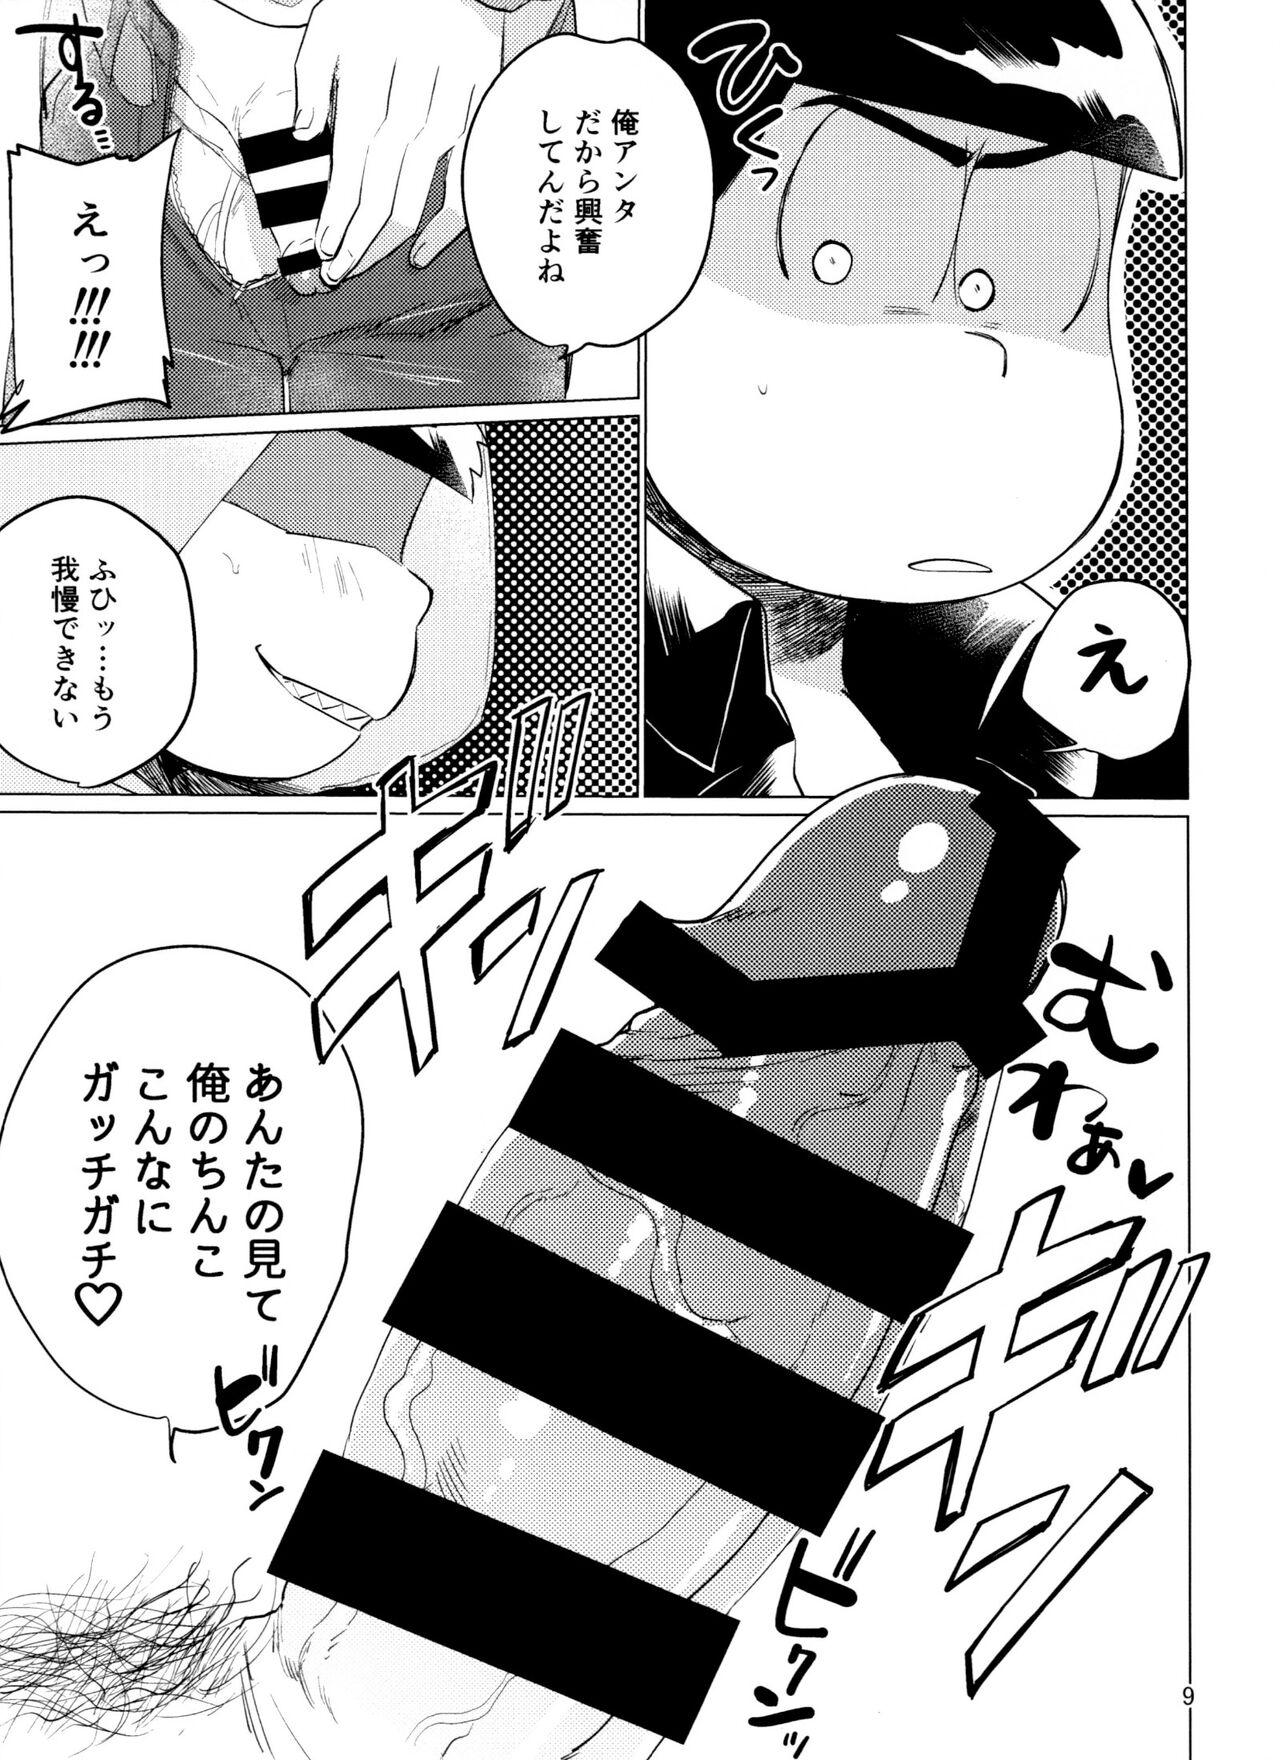 Foda Yame Rarenai Tomaranai! - Osomatsu san Selfie - Page 9